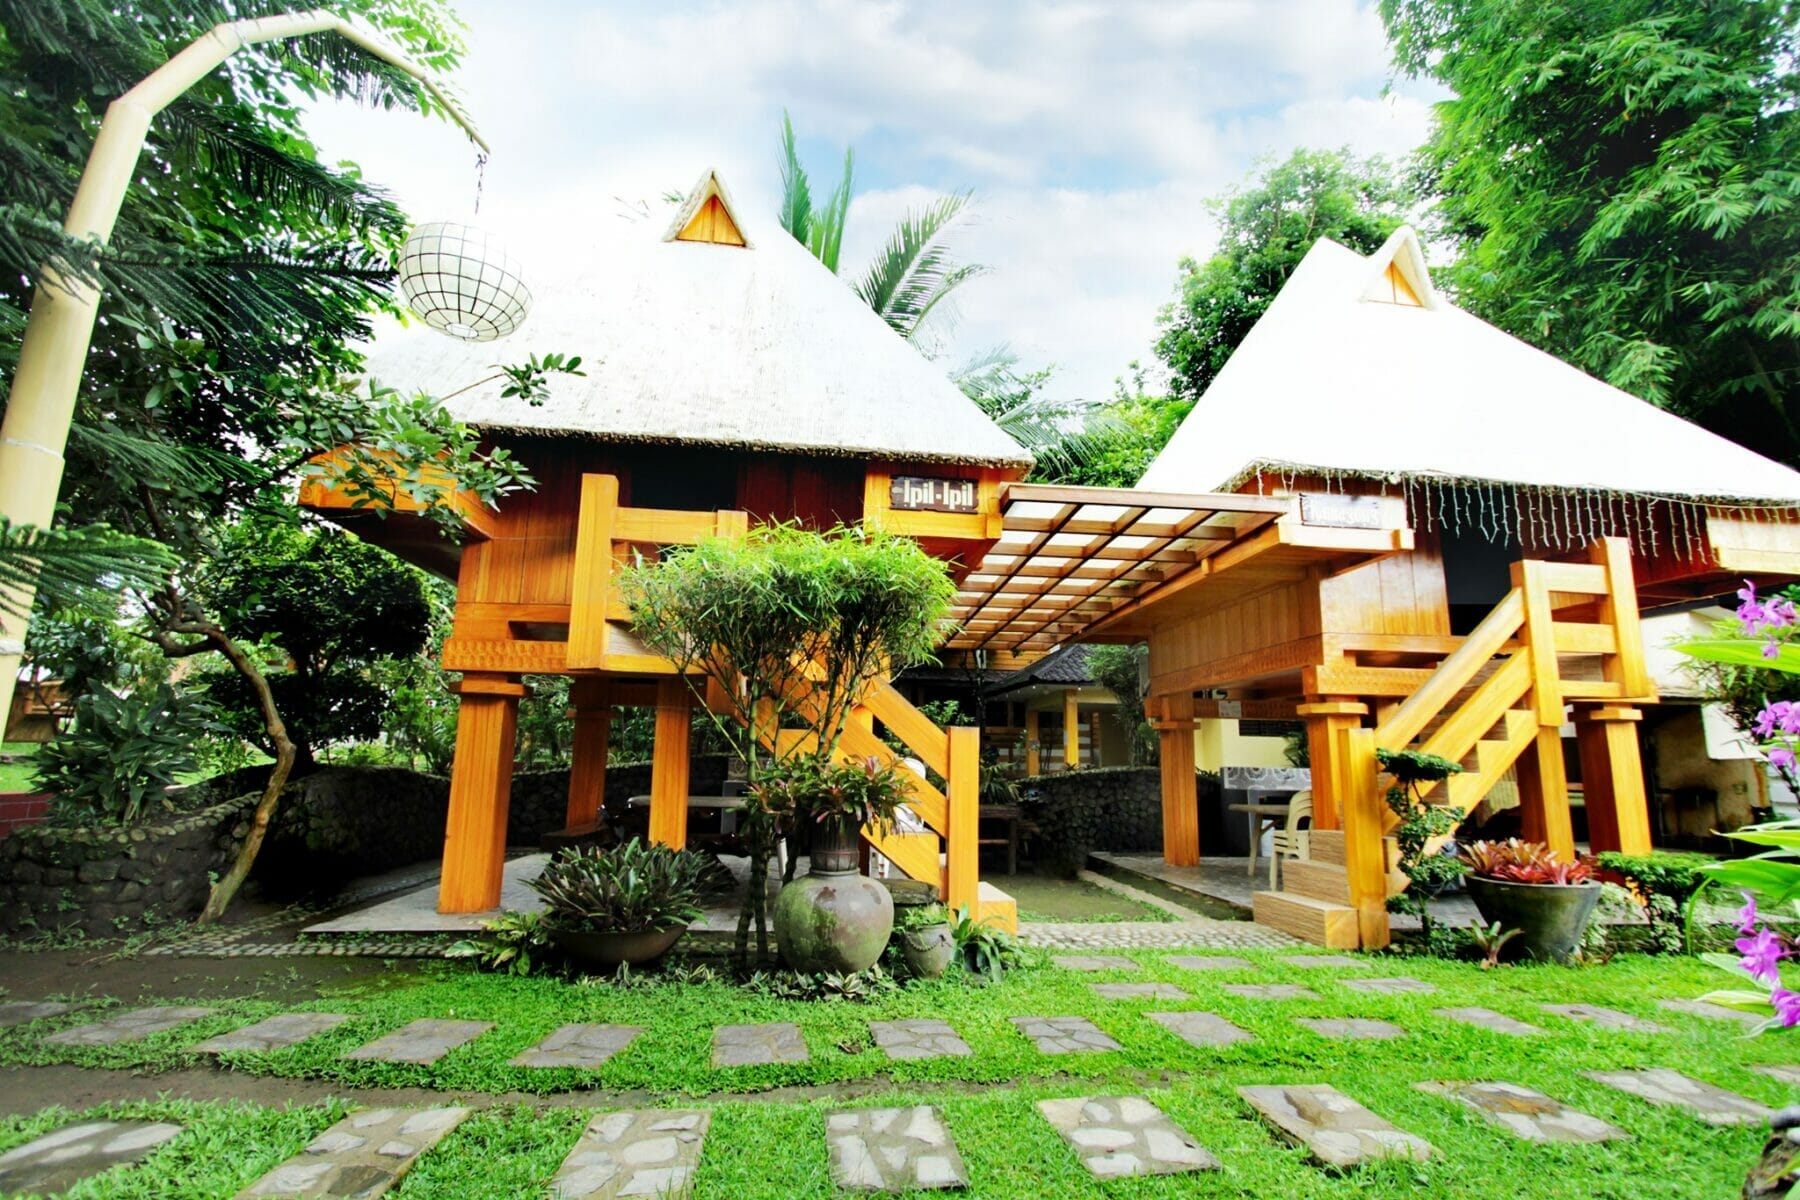 The Ifugao-inspired villas